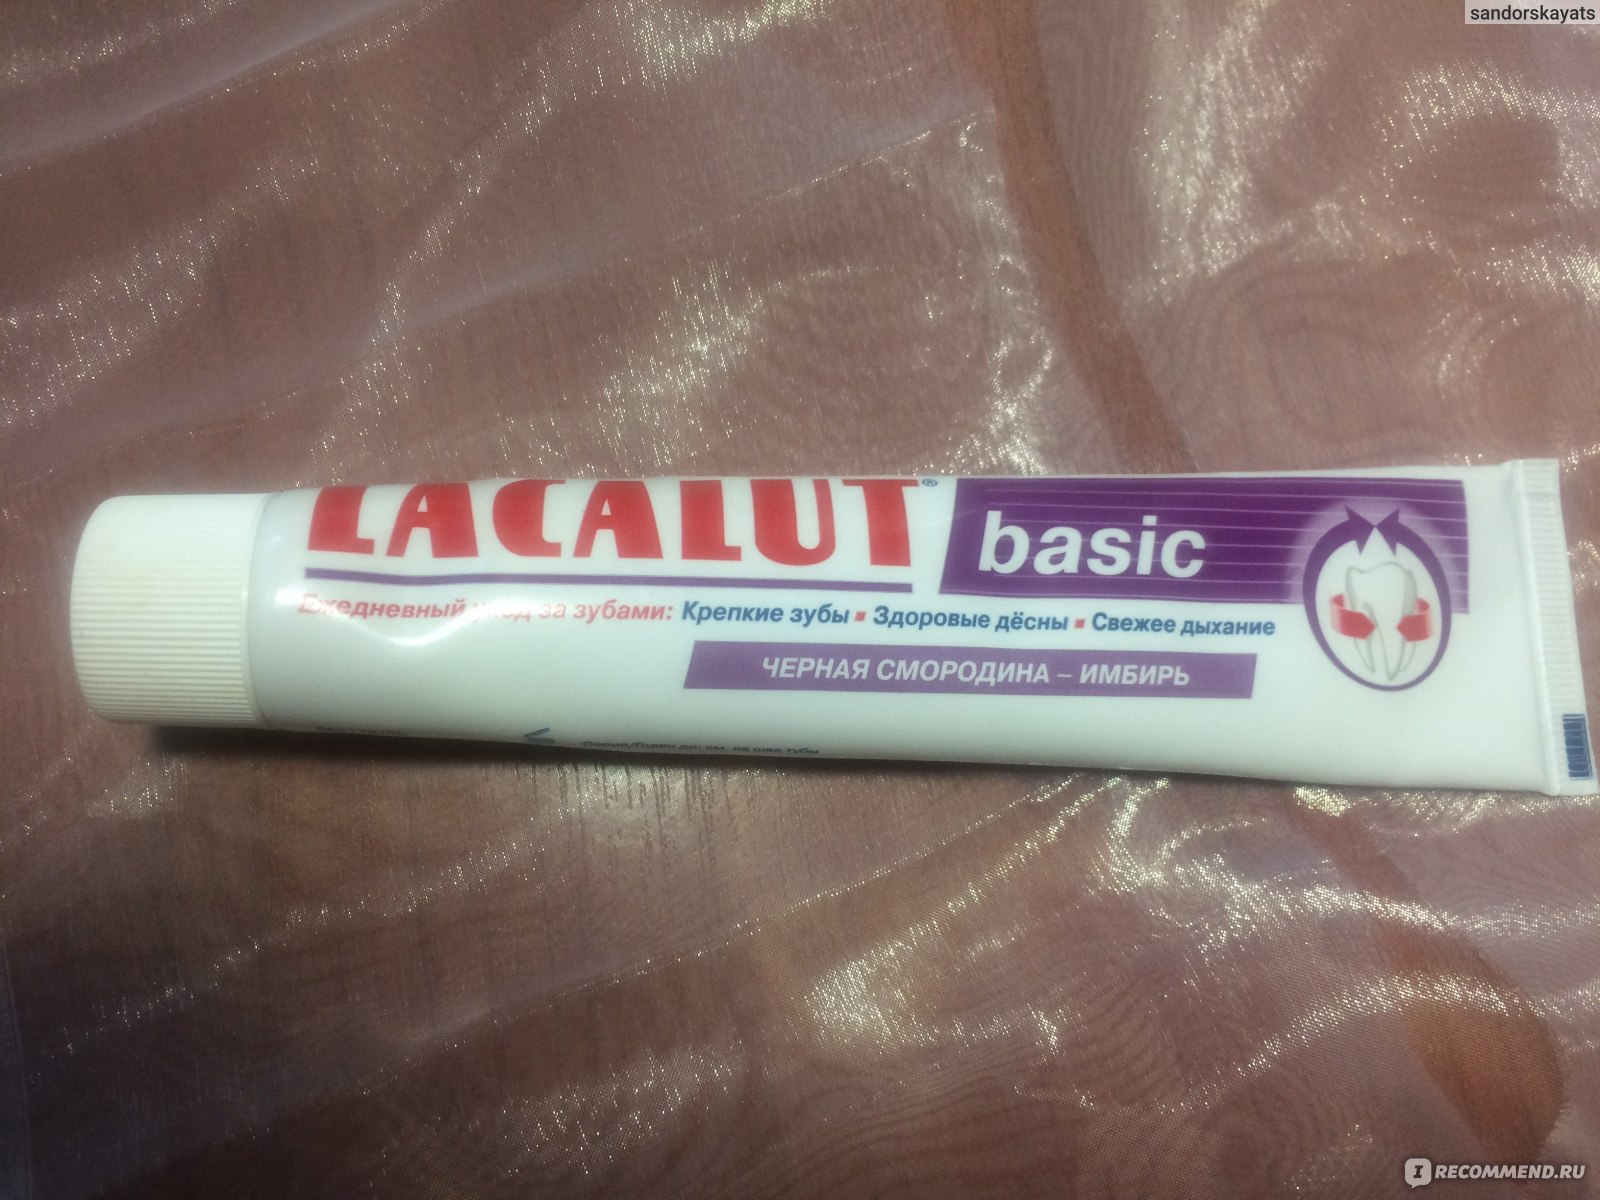 Зубная паста Lacalut, Activ, 75 мл